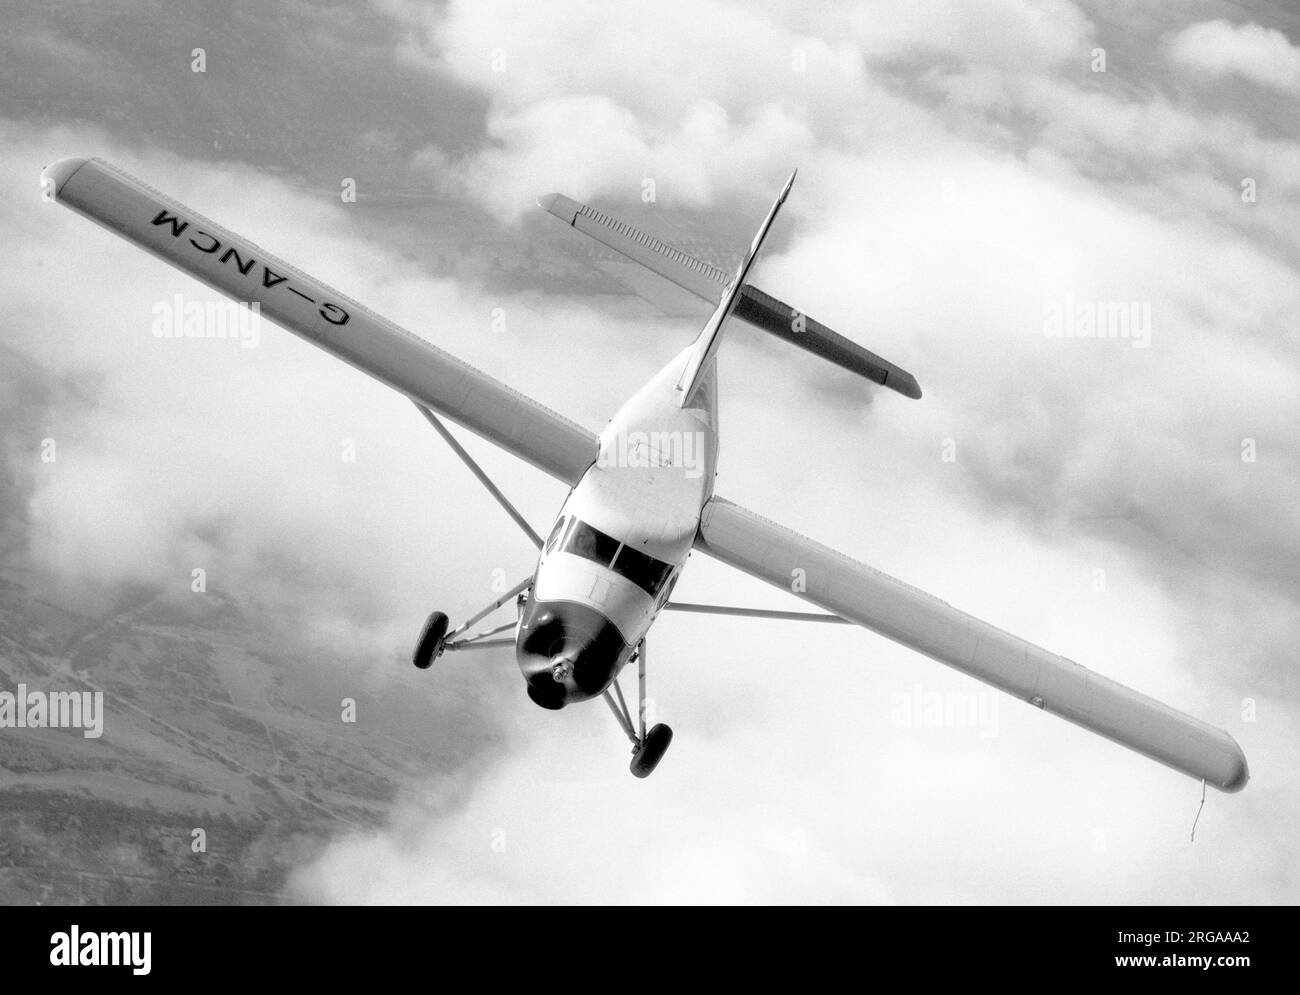 De Havilland Canada DHC.3 Otter G-ANCM (msn 17), eingetragen bei de Havilland Aircraft Company Ltd., Hatfield, Vereinigtes Königreich. Vom 31. Juli 1953 für den Betrieb als europäischer Demonstrator. Später im März 1957 als im-1057 an die indische Luftwaffe geliefert. Stockfoto